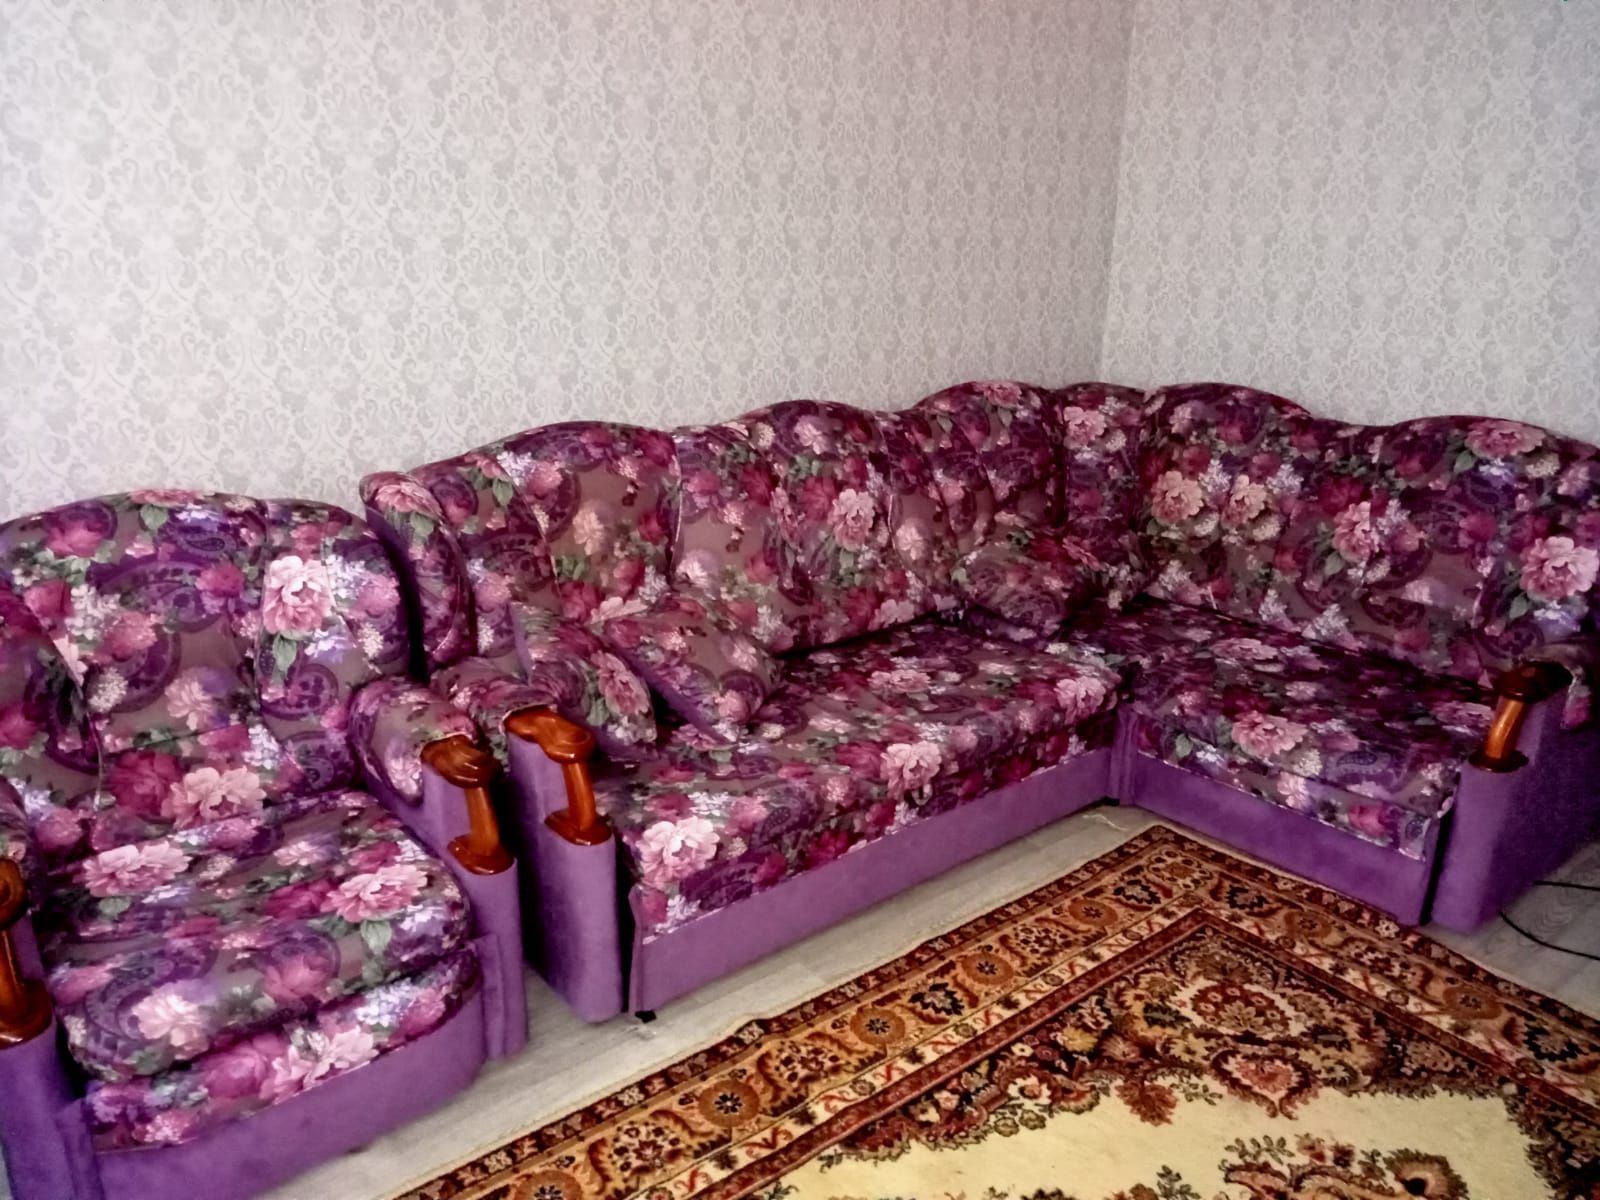 Продается диван в хорошем состоянии